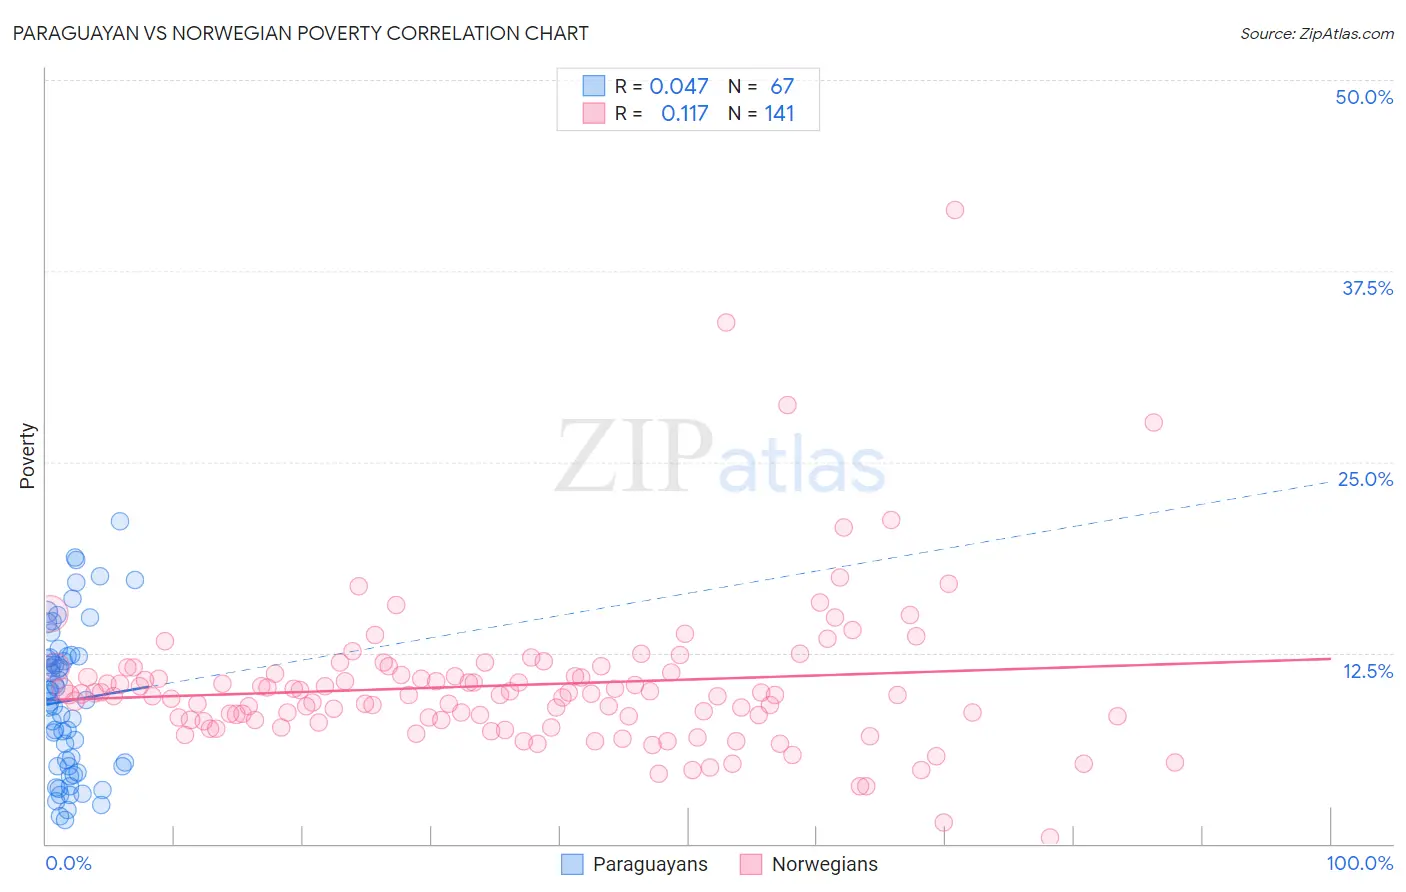 Paraguayan vs Norwegian Poverty